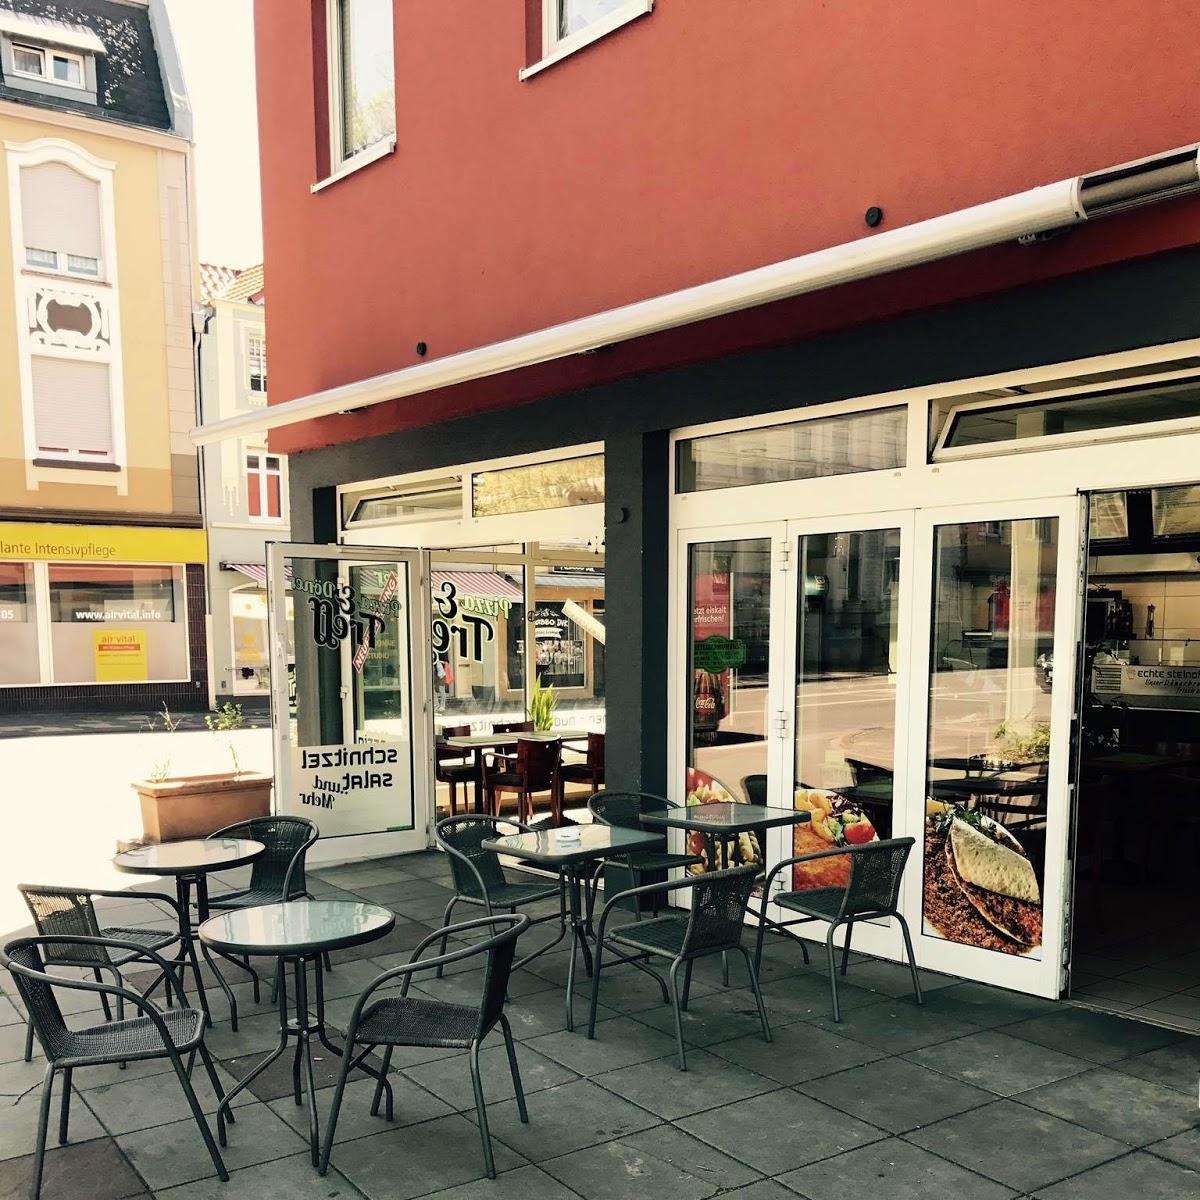 Restaurant "Pizza Döner Treff" in Beckum